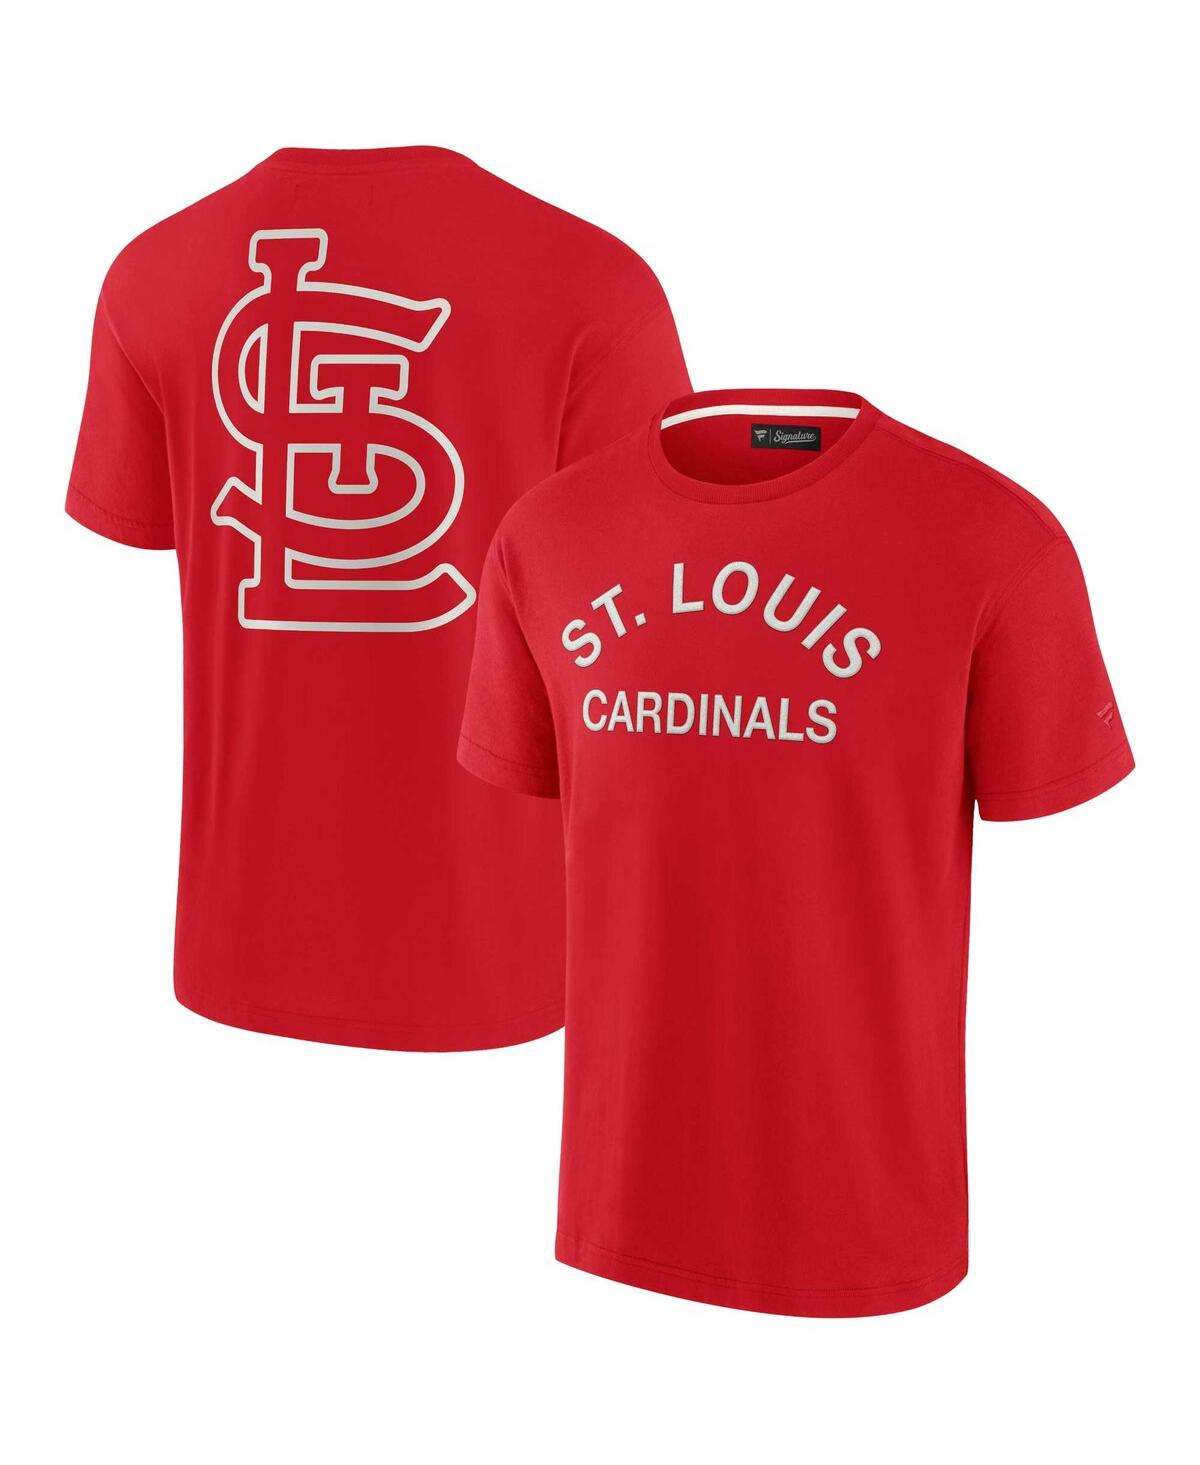 Fanatics Signature Men's And Women's  Red St. Louis Cardinals Super Soft Short Sleeve T-shirt